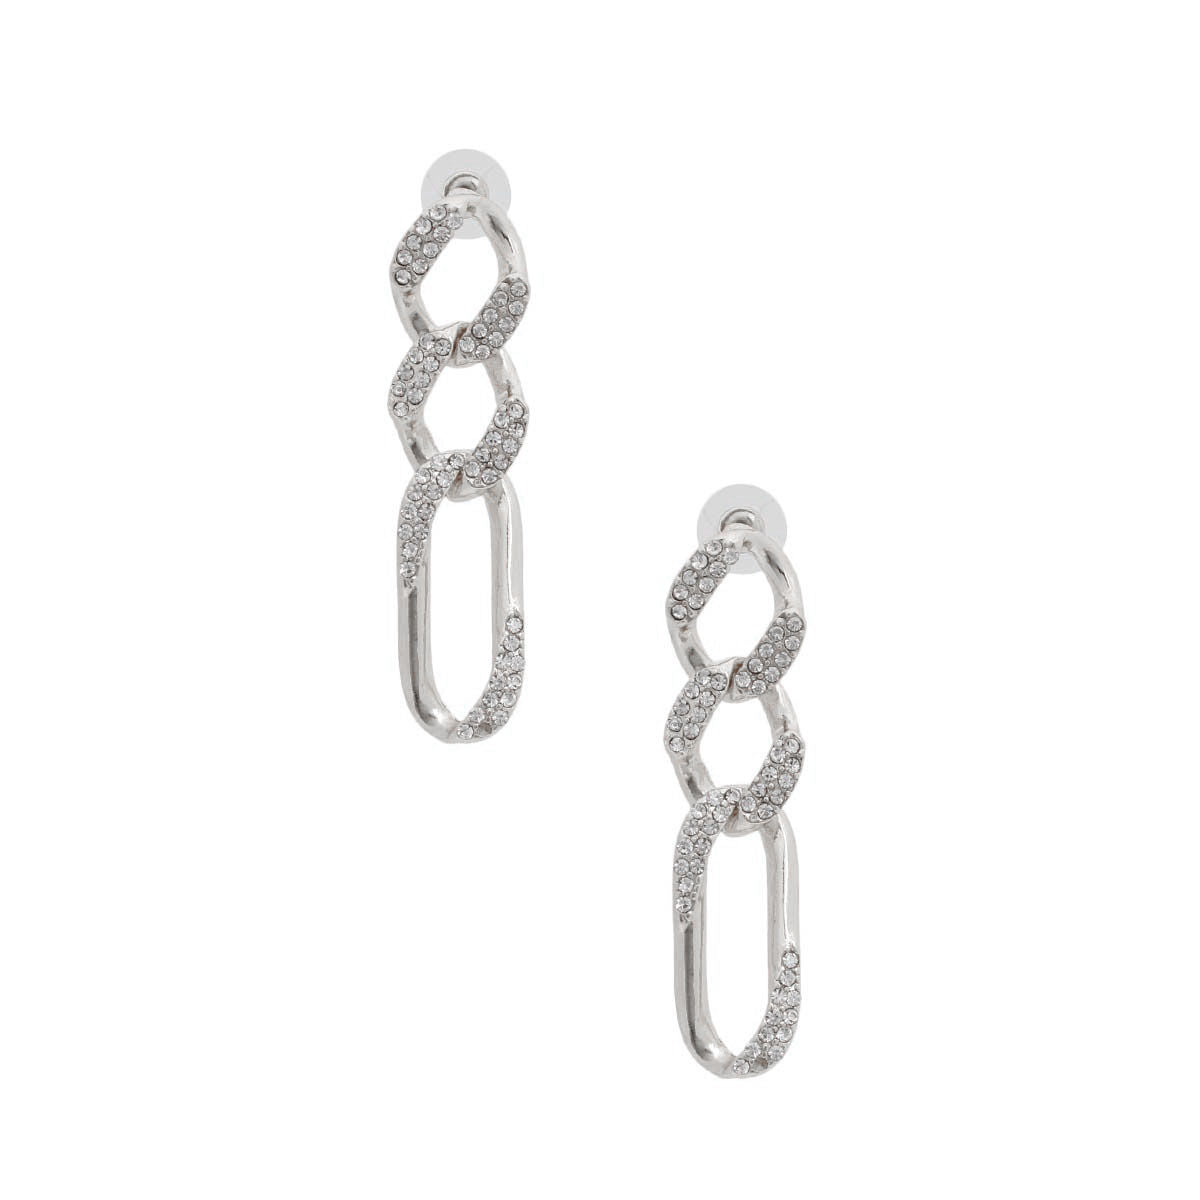 Silver Rhinestone Crusted Chain Earrings